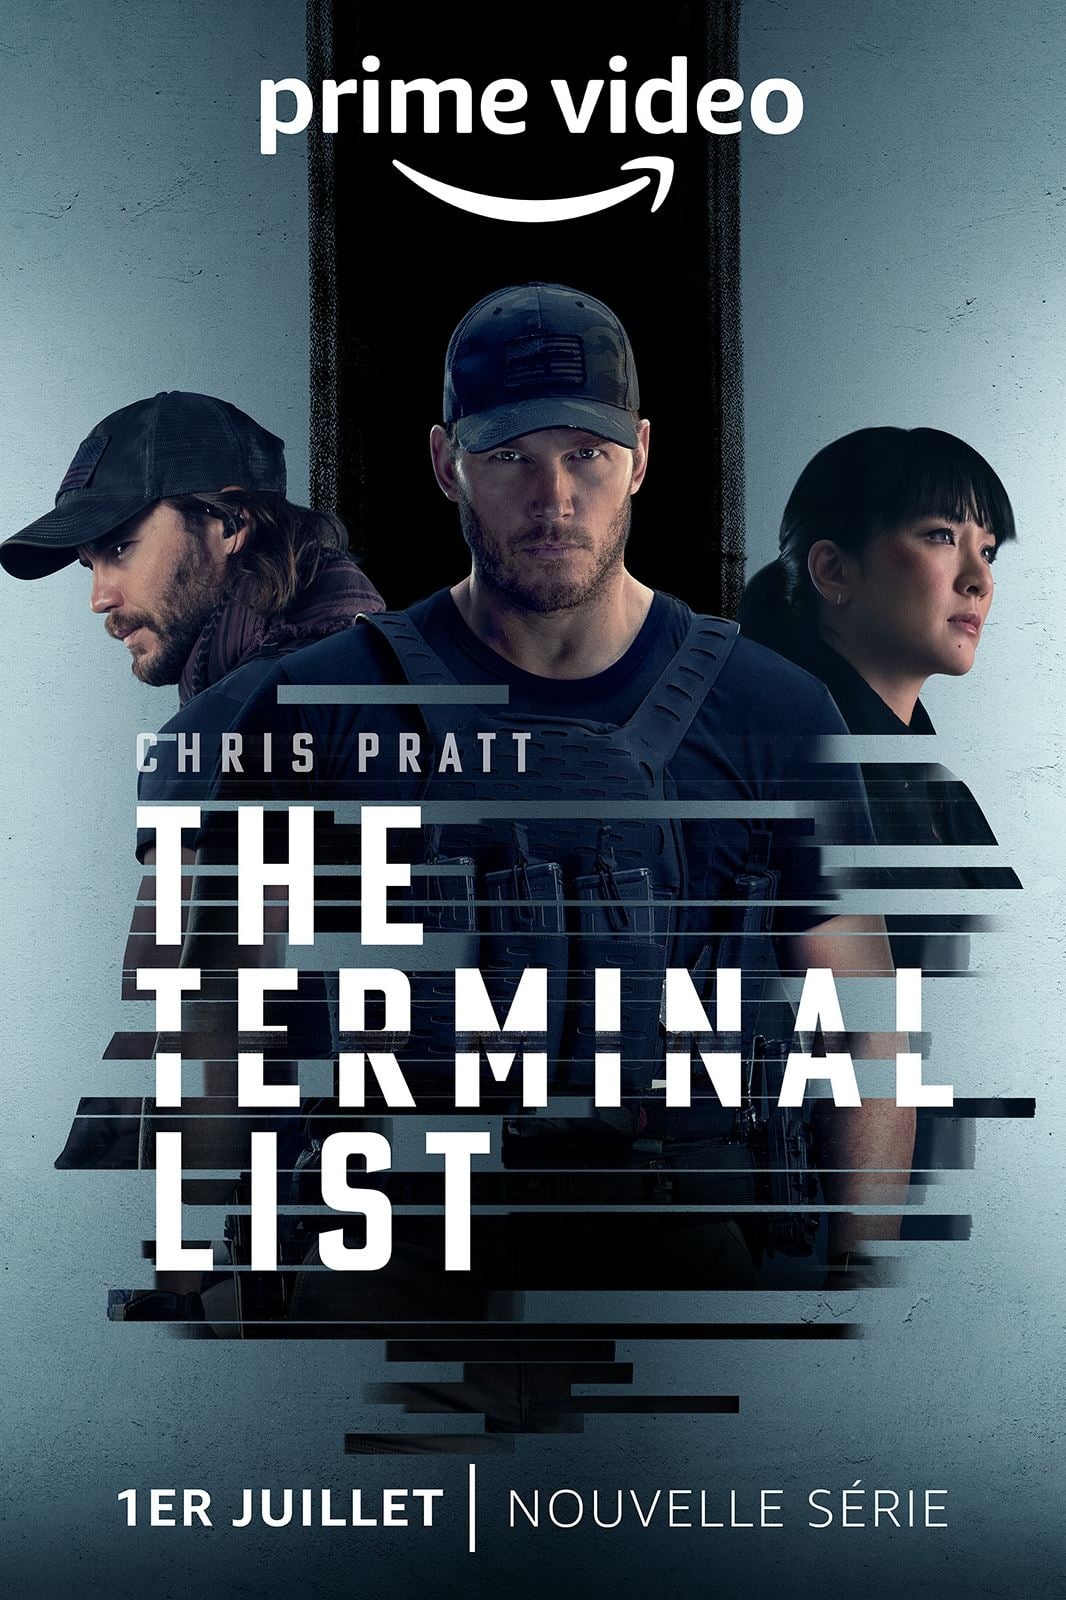 Affiche de la série The Terminal List